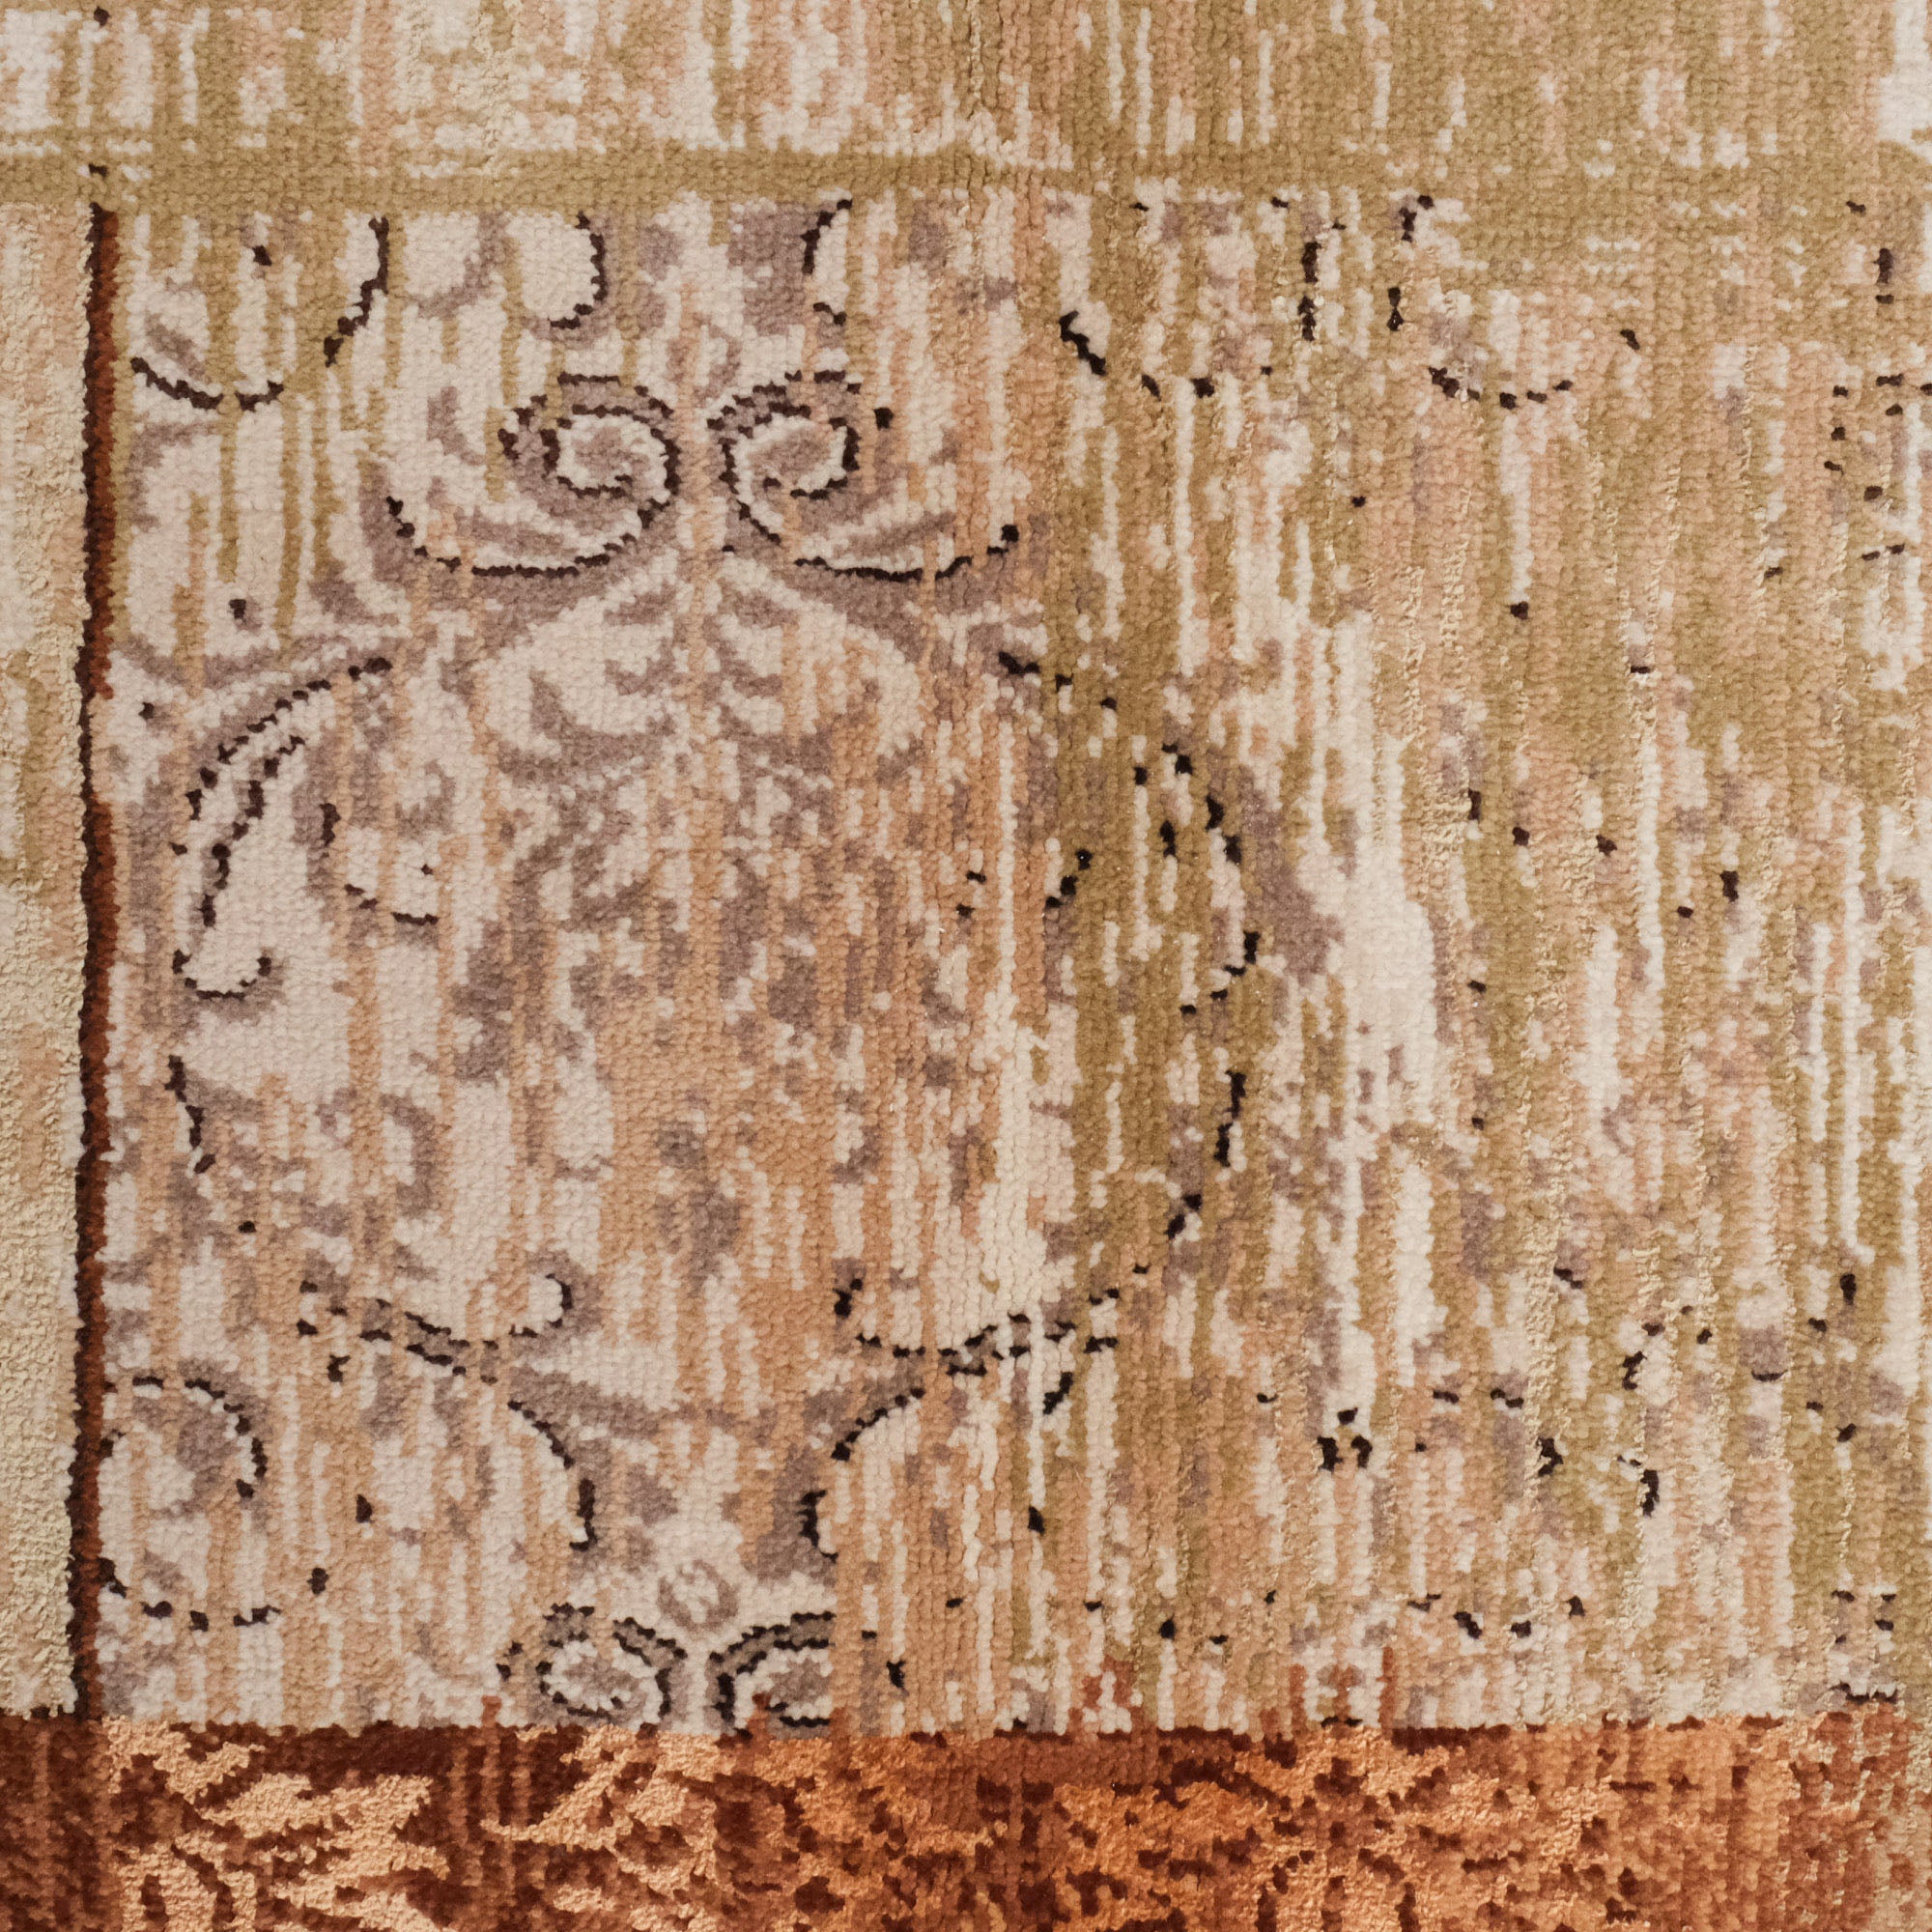 Hand Woven Beige Vintage Patterned Silk Carpet